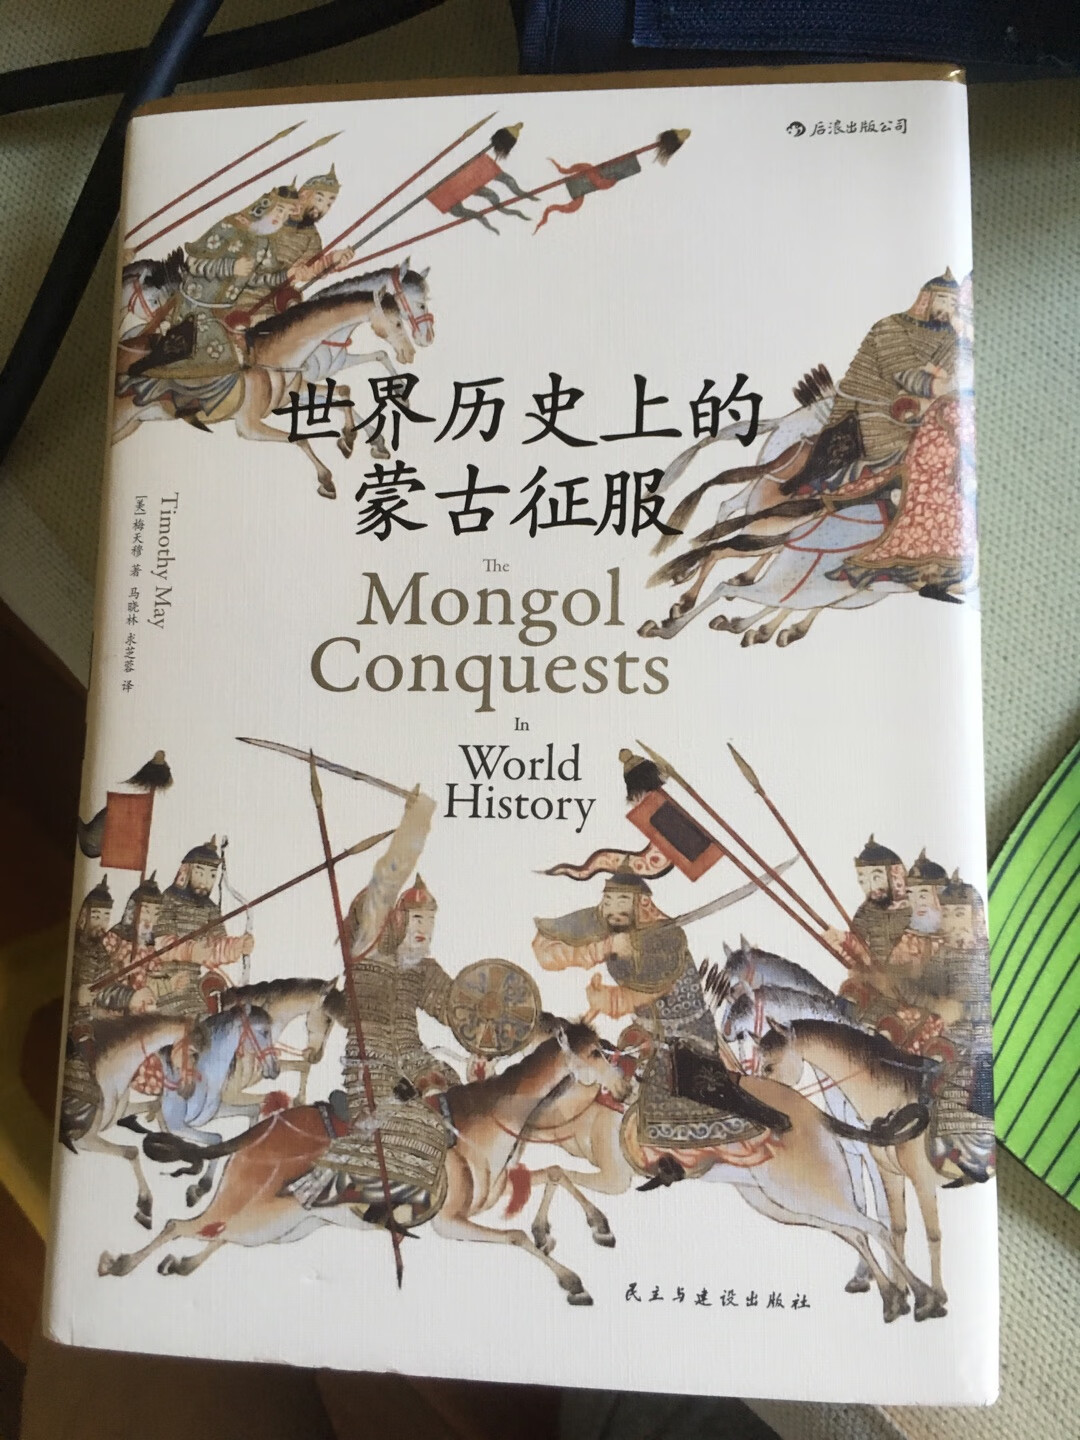 蒙古帝国的历史其实我们好像都知道，但是又感到有些模糊，这本书对这段历史有了比较深刻的阐述，很值得一读！